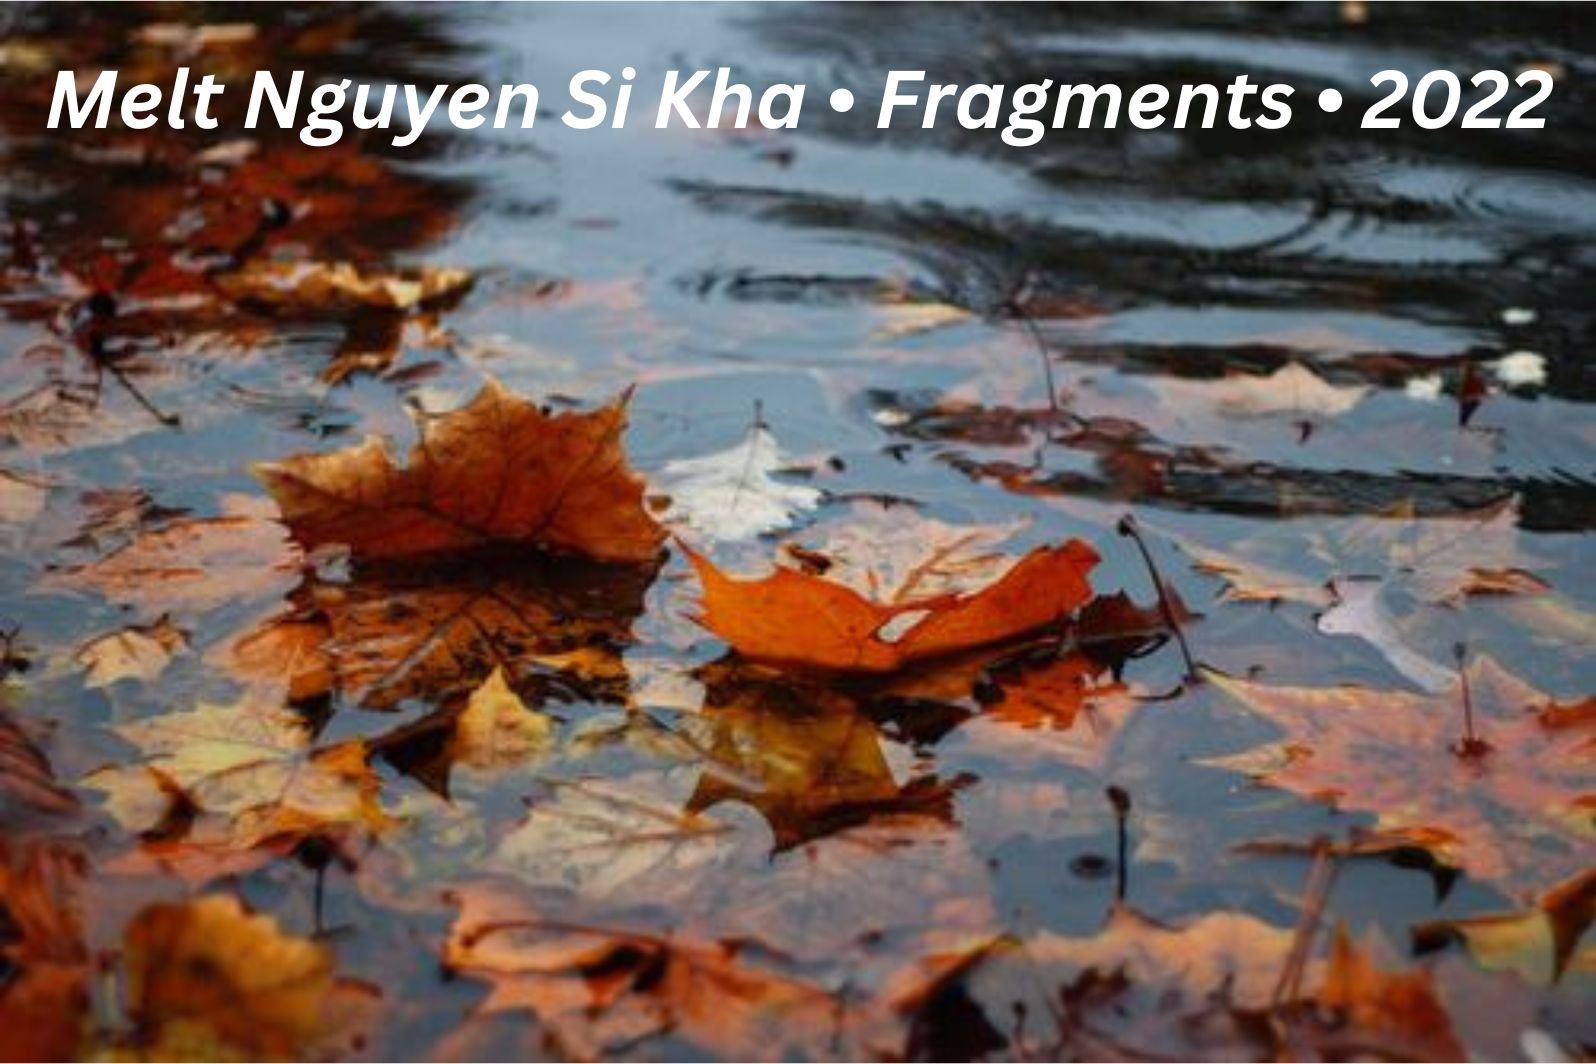 Melt Nguyen Si Kha • Fragments • 2022